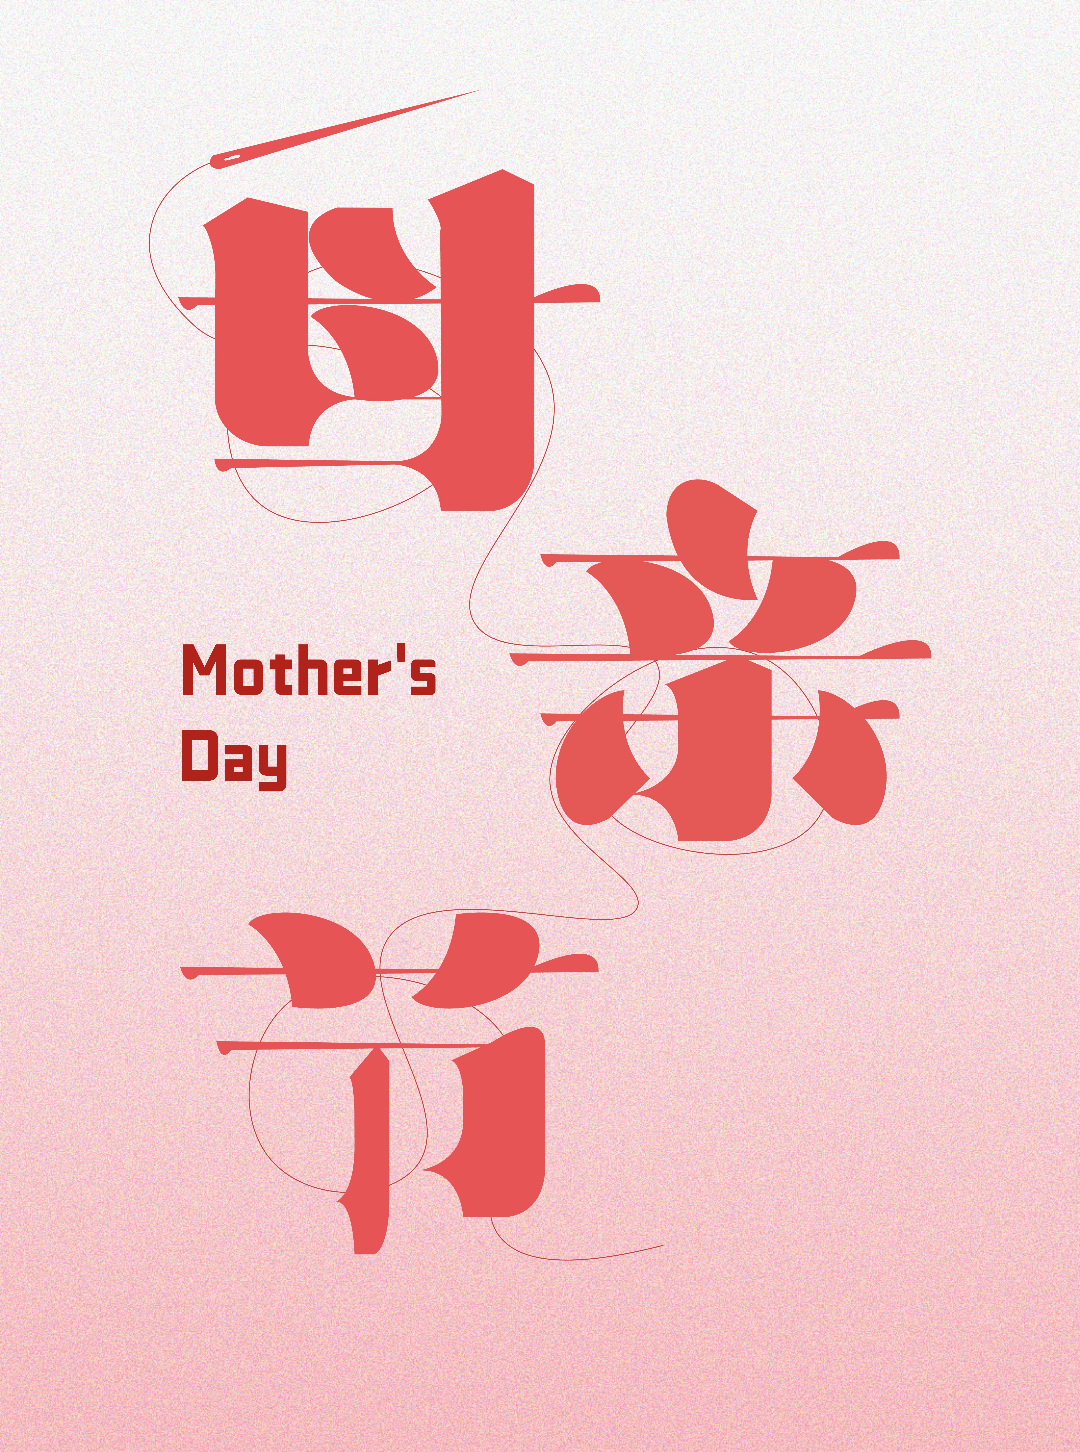 字体帮2959: 母亲节 今日命题: 自由命题